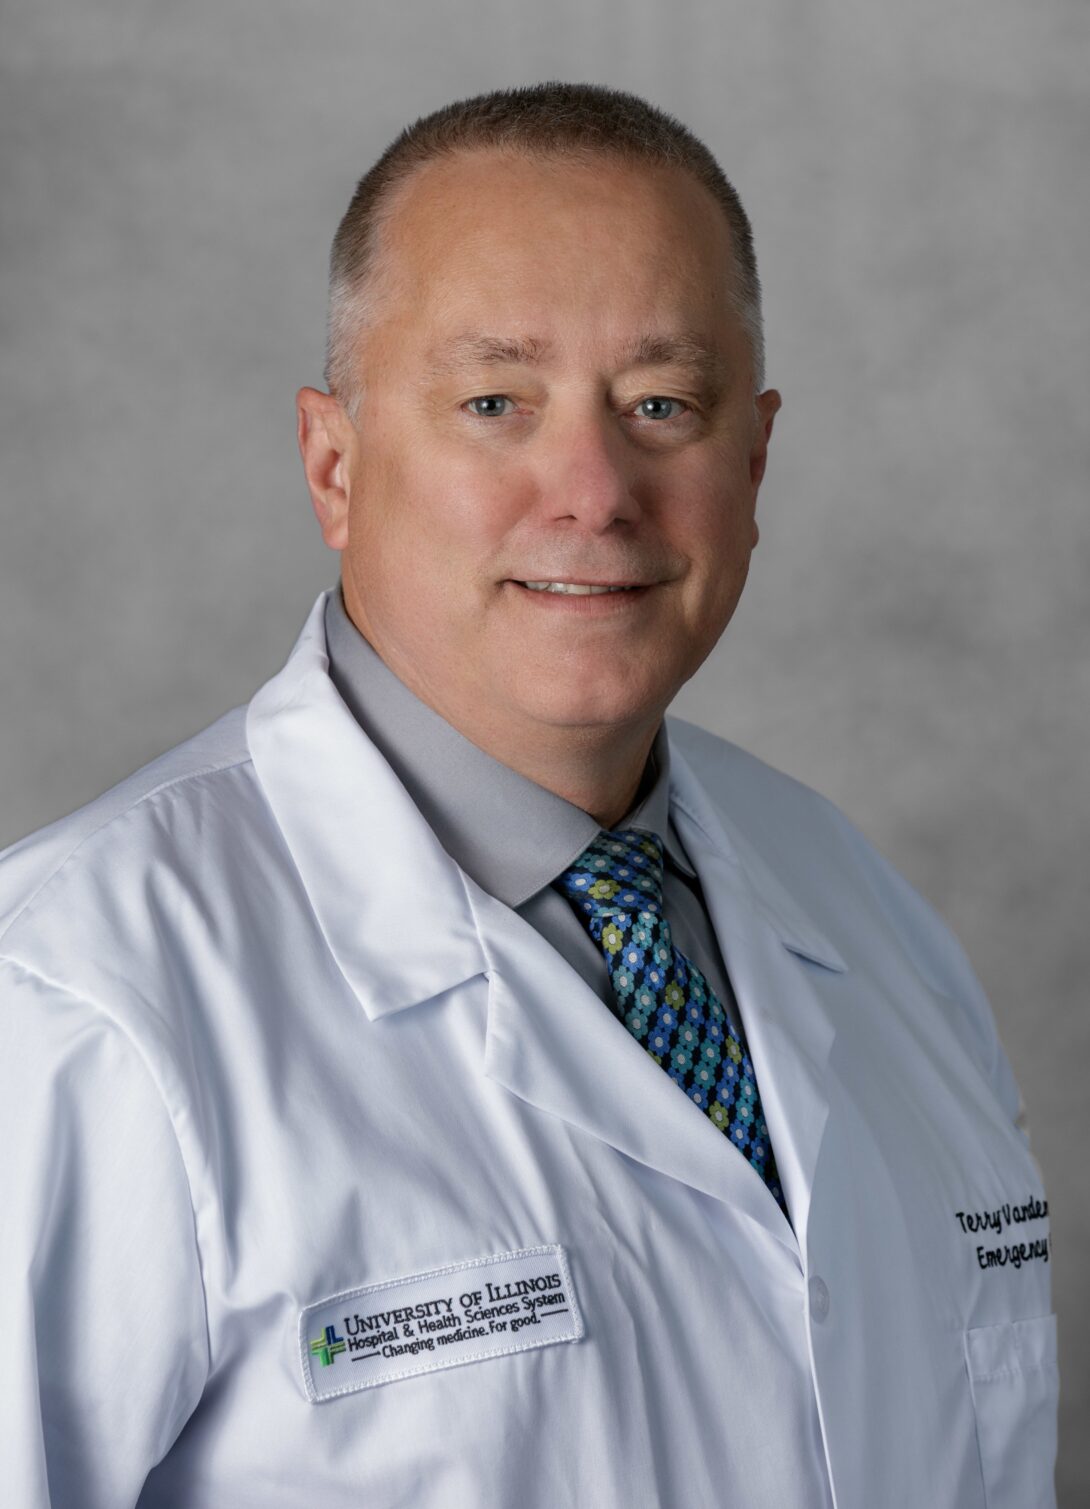 Dr. Terry Vanden Hoek